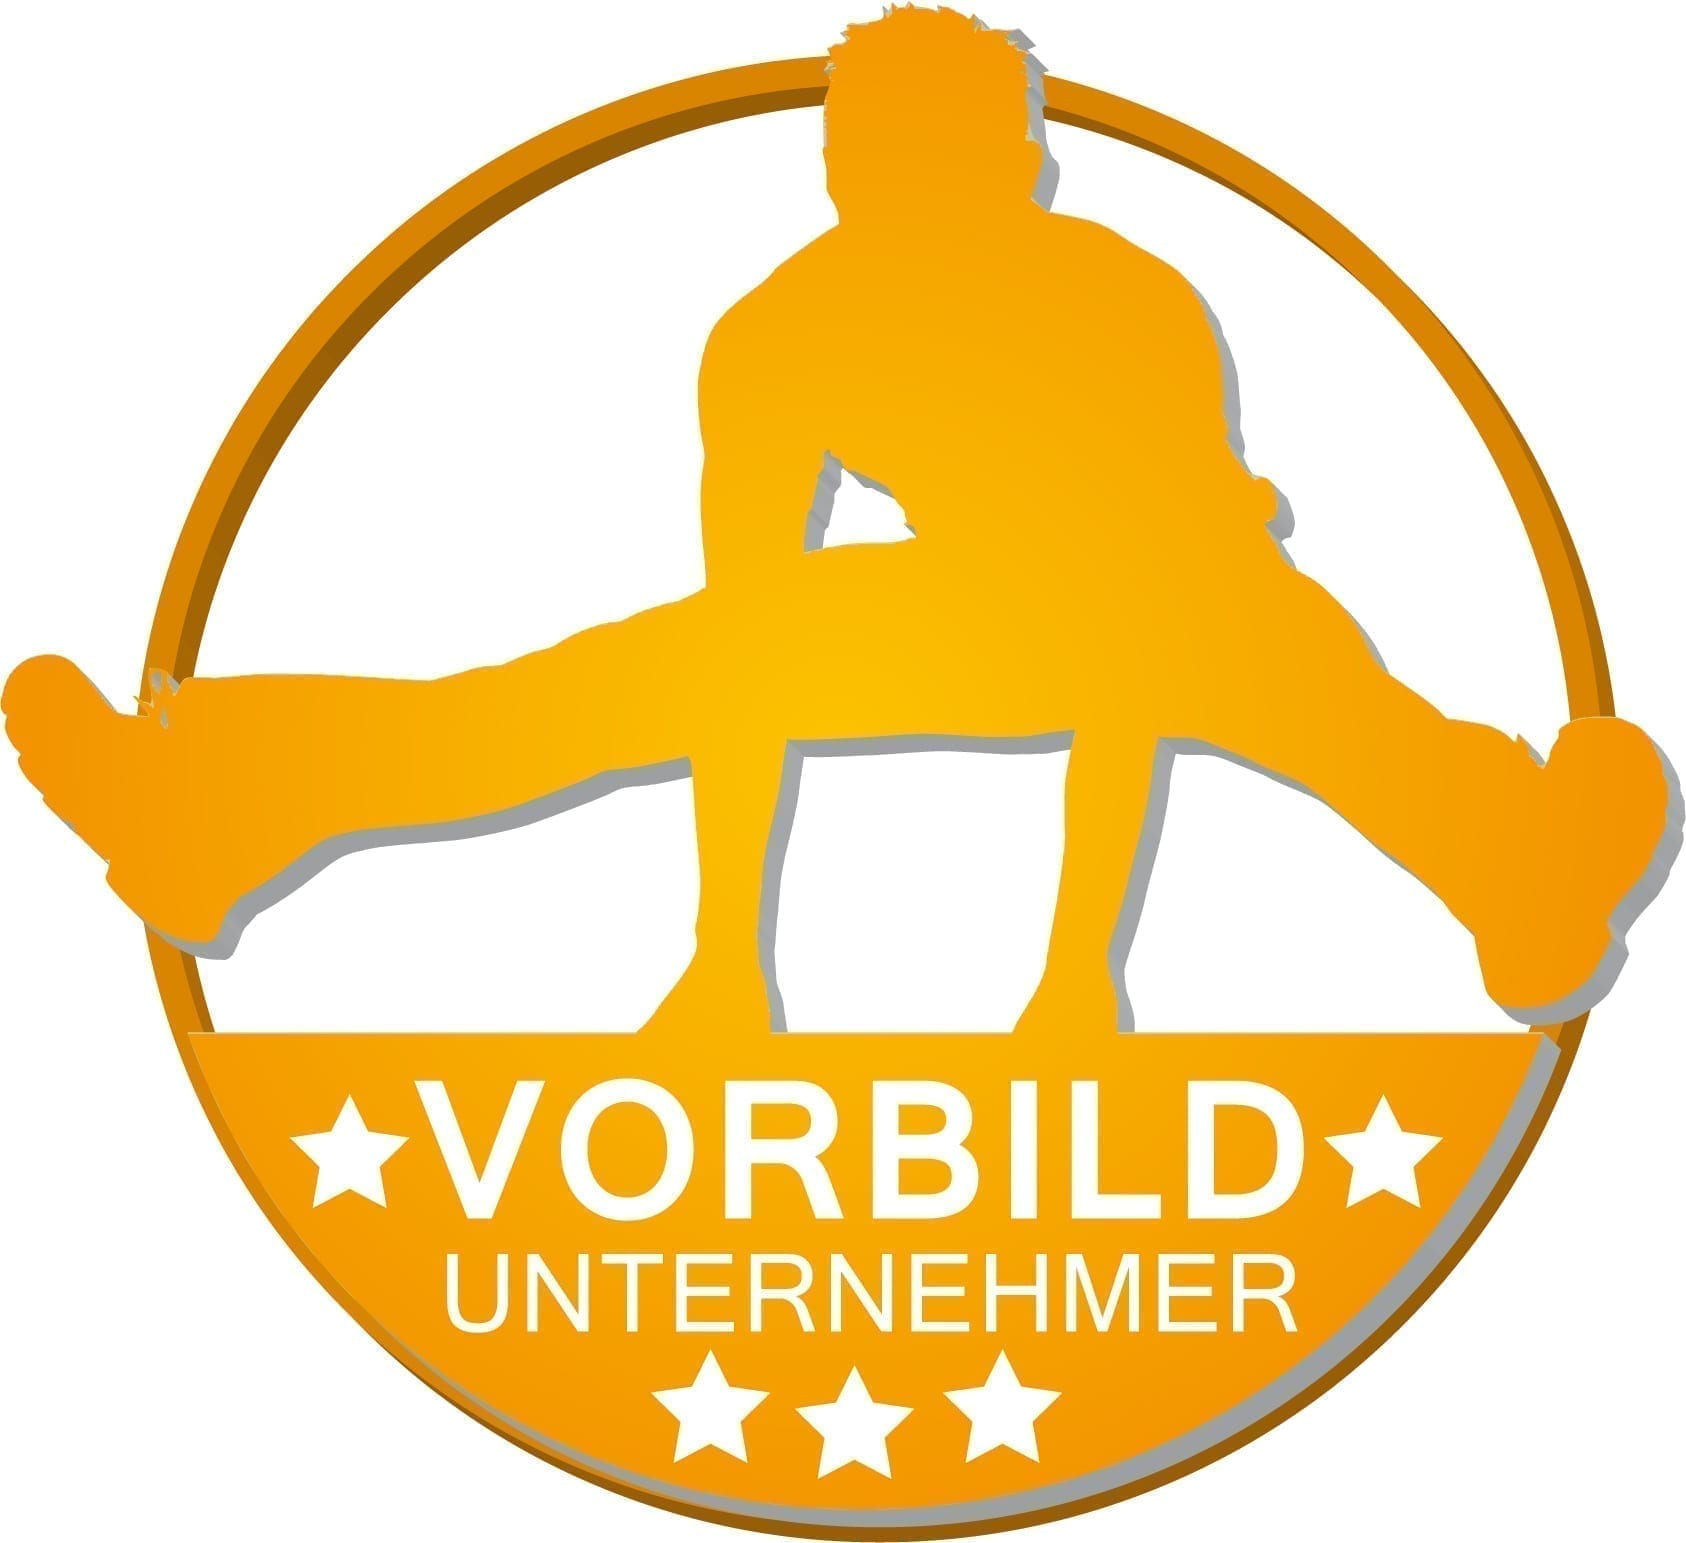 Vorbild Unternehmer Logo, Auszeichnung Gold